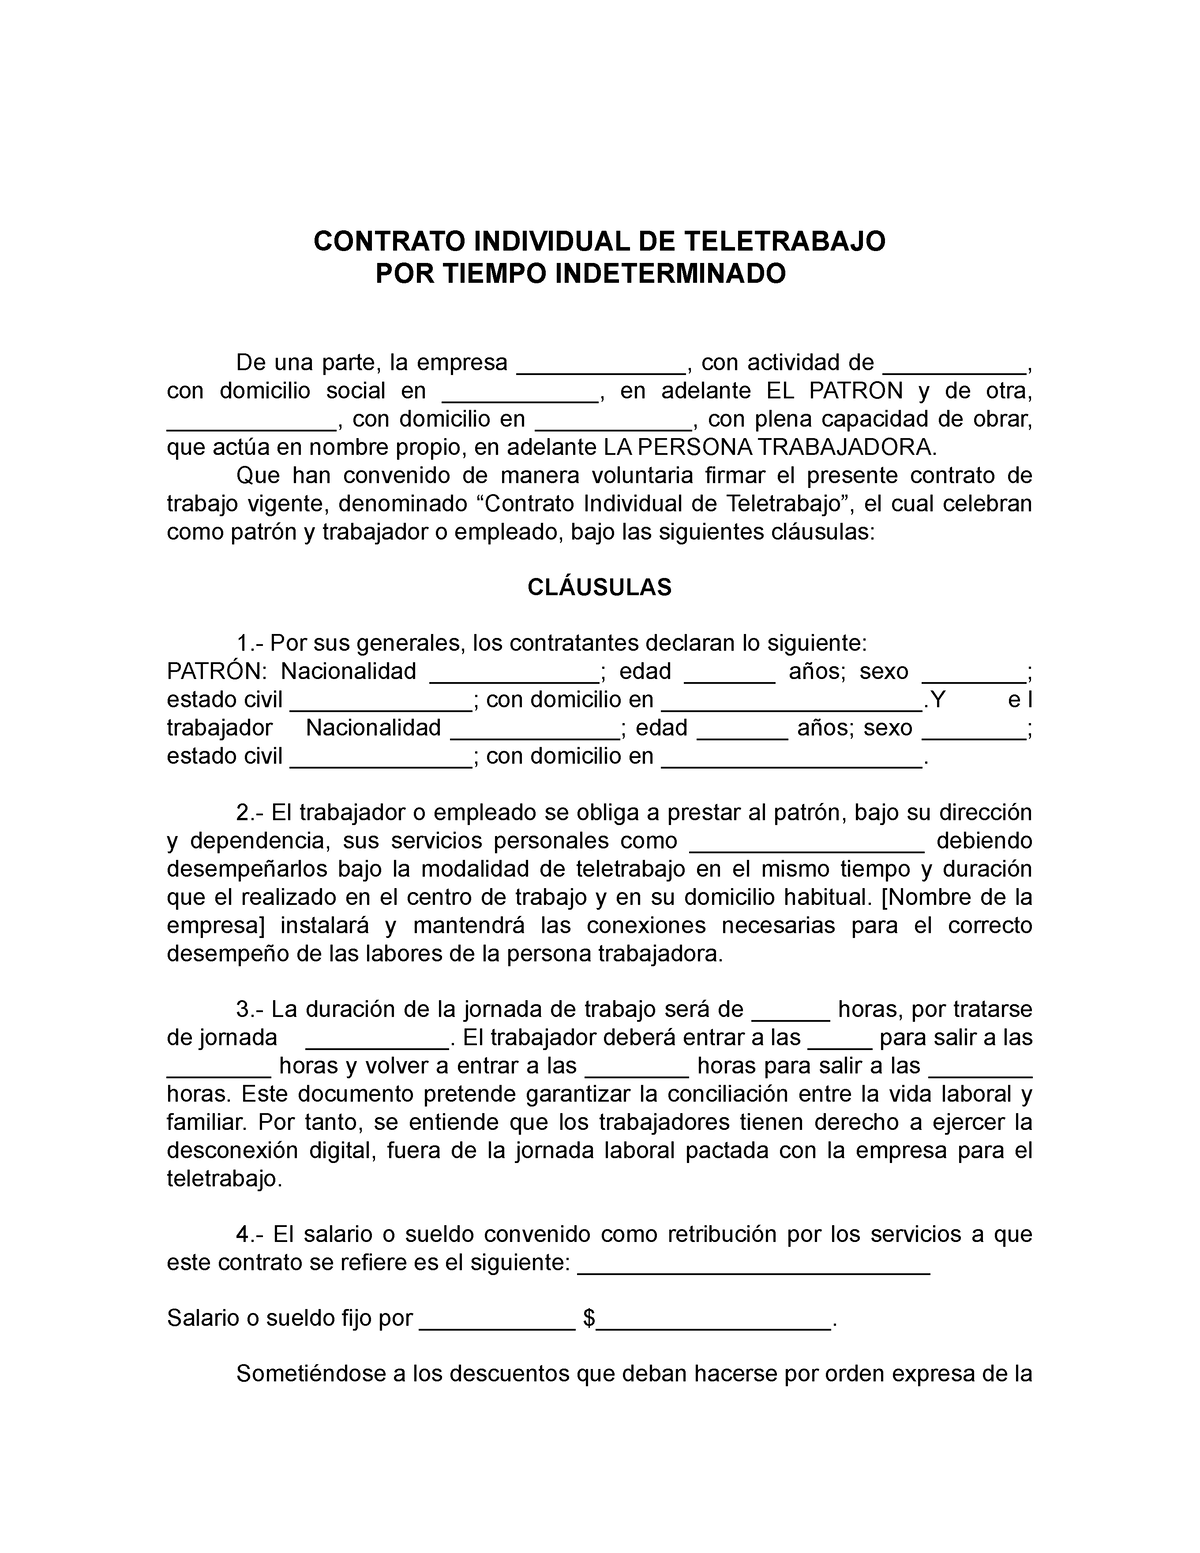 Contrato De Teletrabajo Contrato De Teletrabajo Contrato De Teletrabajo -  CONTRATO INDIVIDUAL DE - Studocu